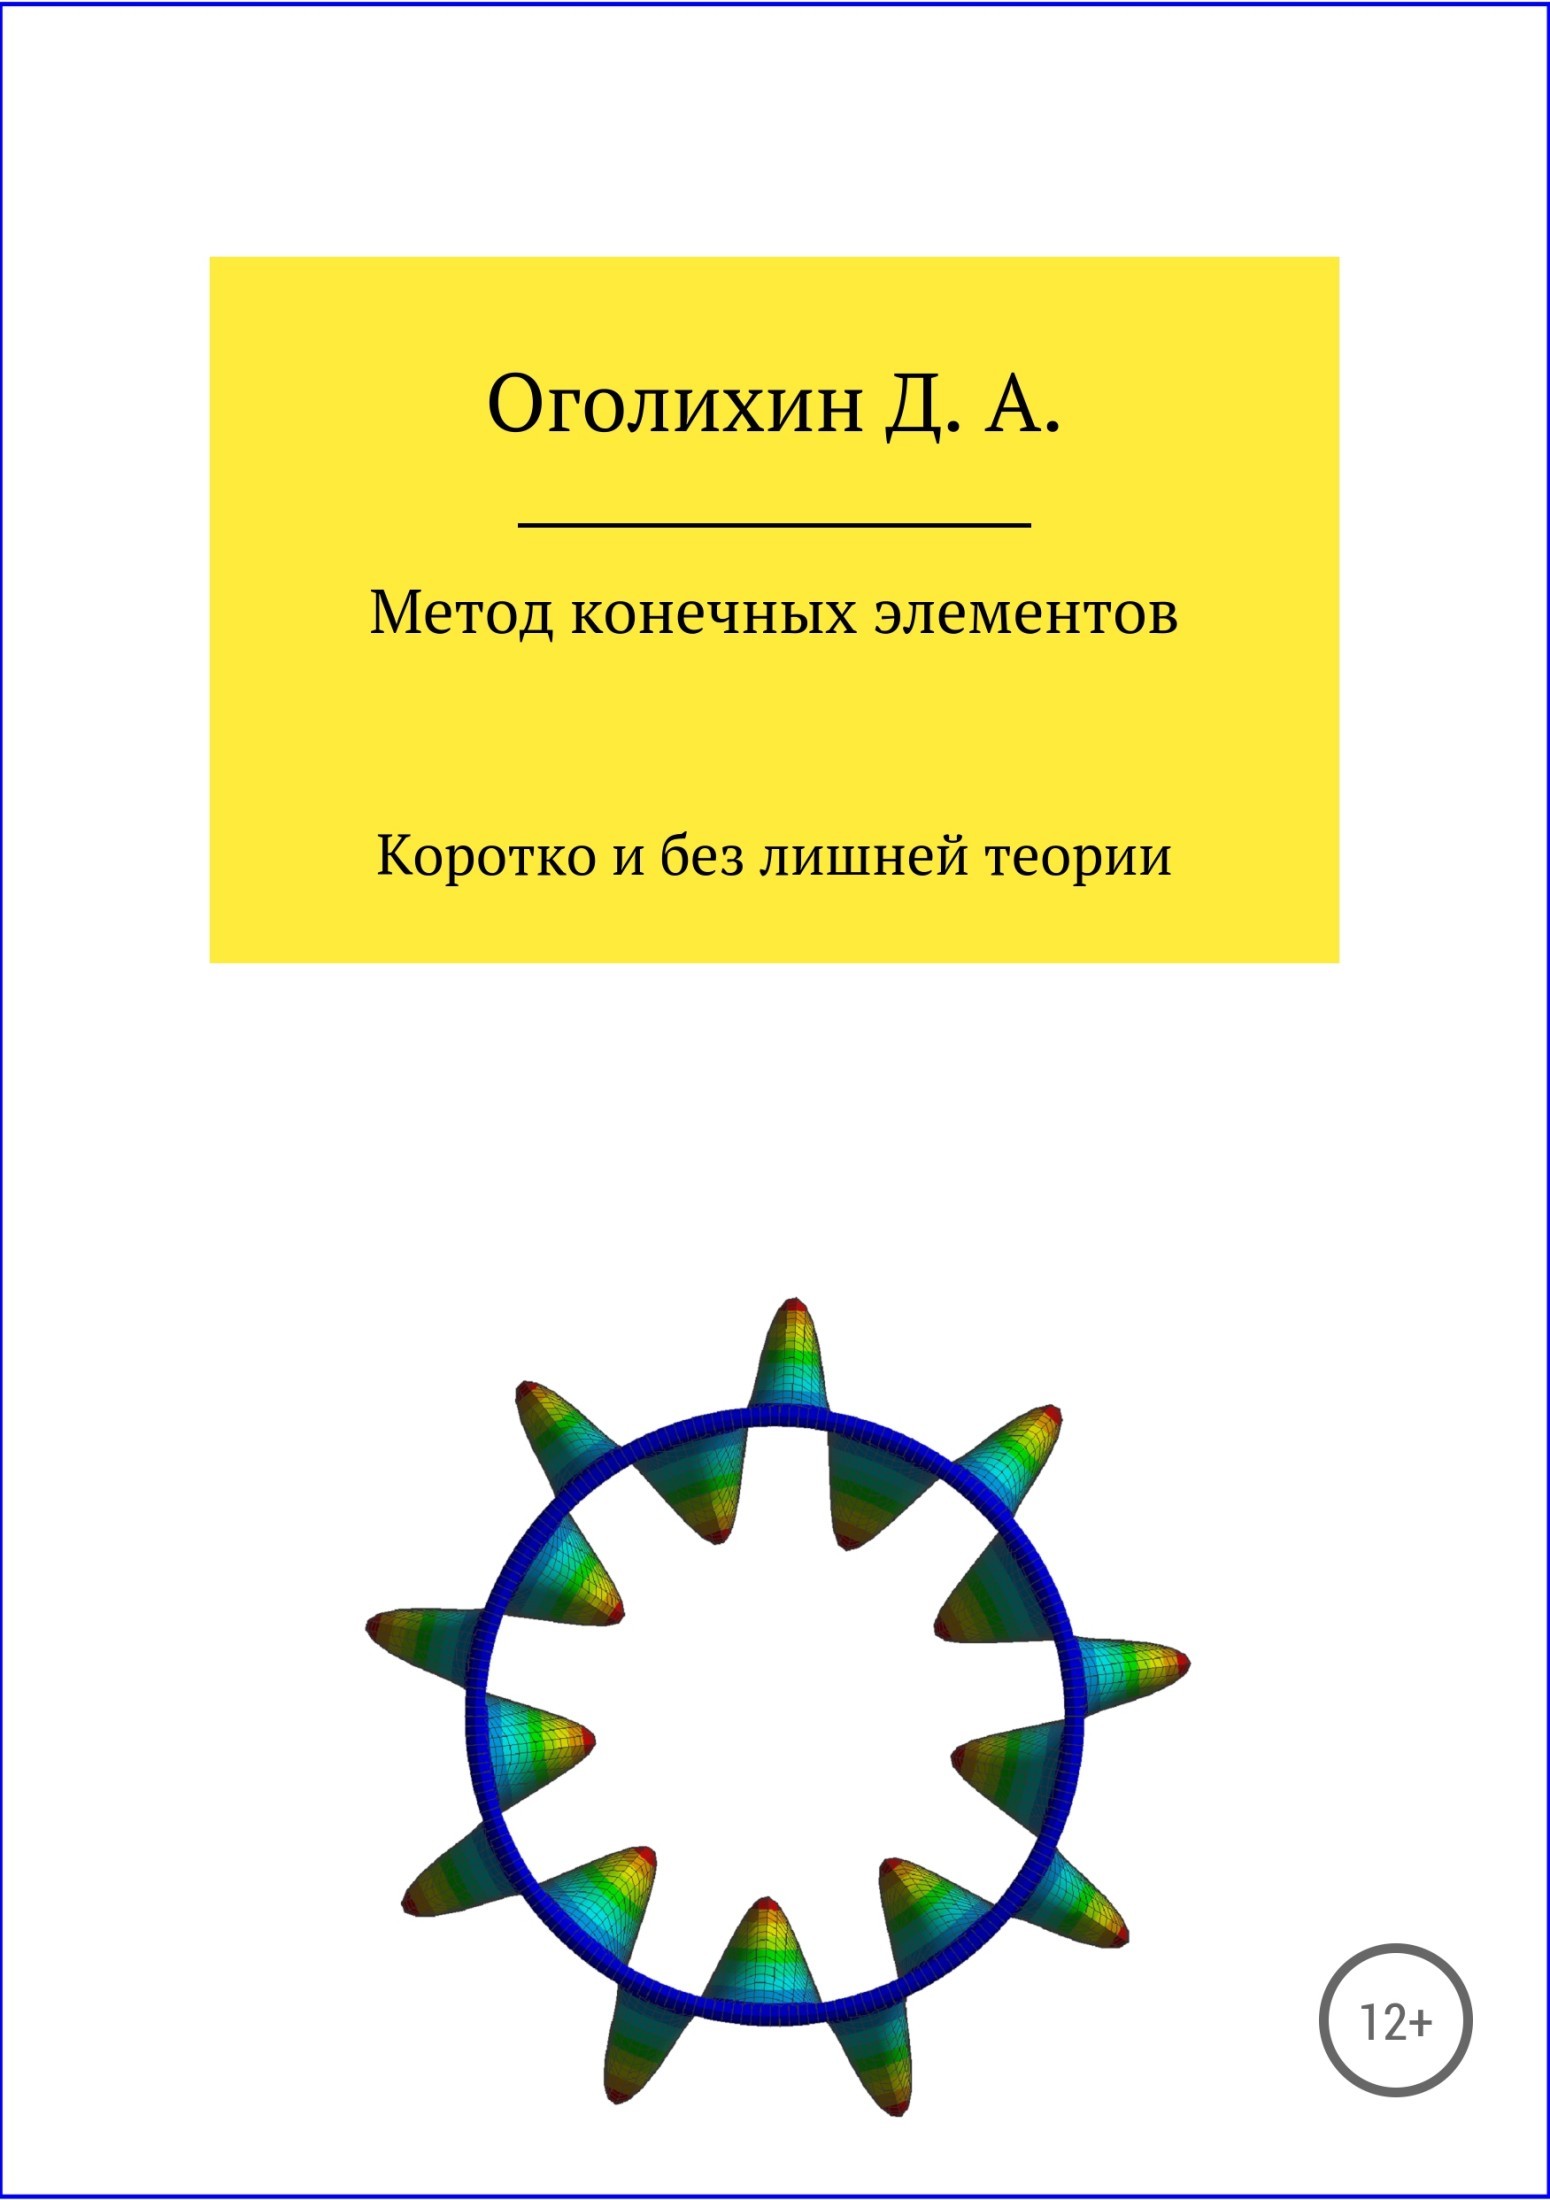 Книга Метод конечных элементов из серии , созданная Дмитрий Оголихин, может относится к жанру Физика. Стоимость книги Метод конечных элементов  с идентификатором 32506936 составляет 99.90 руб.